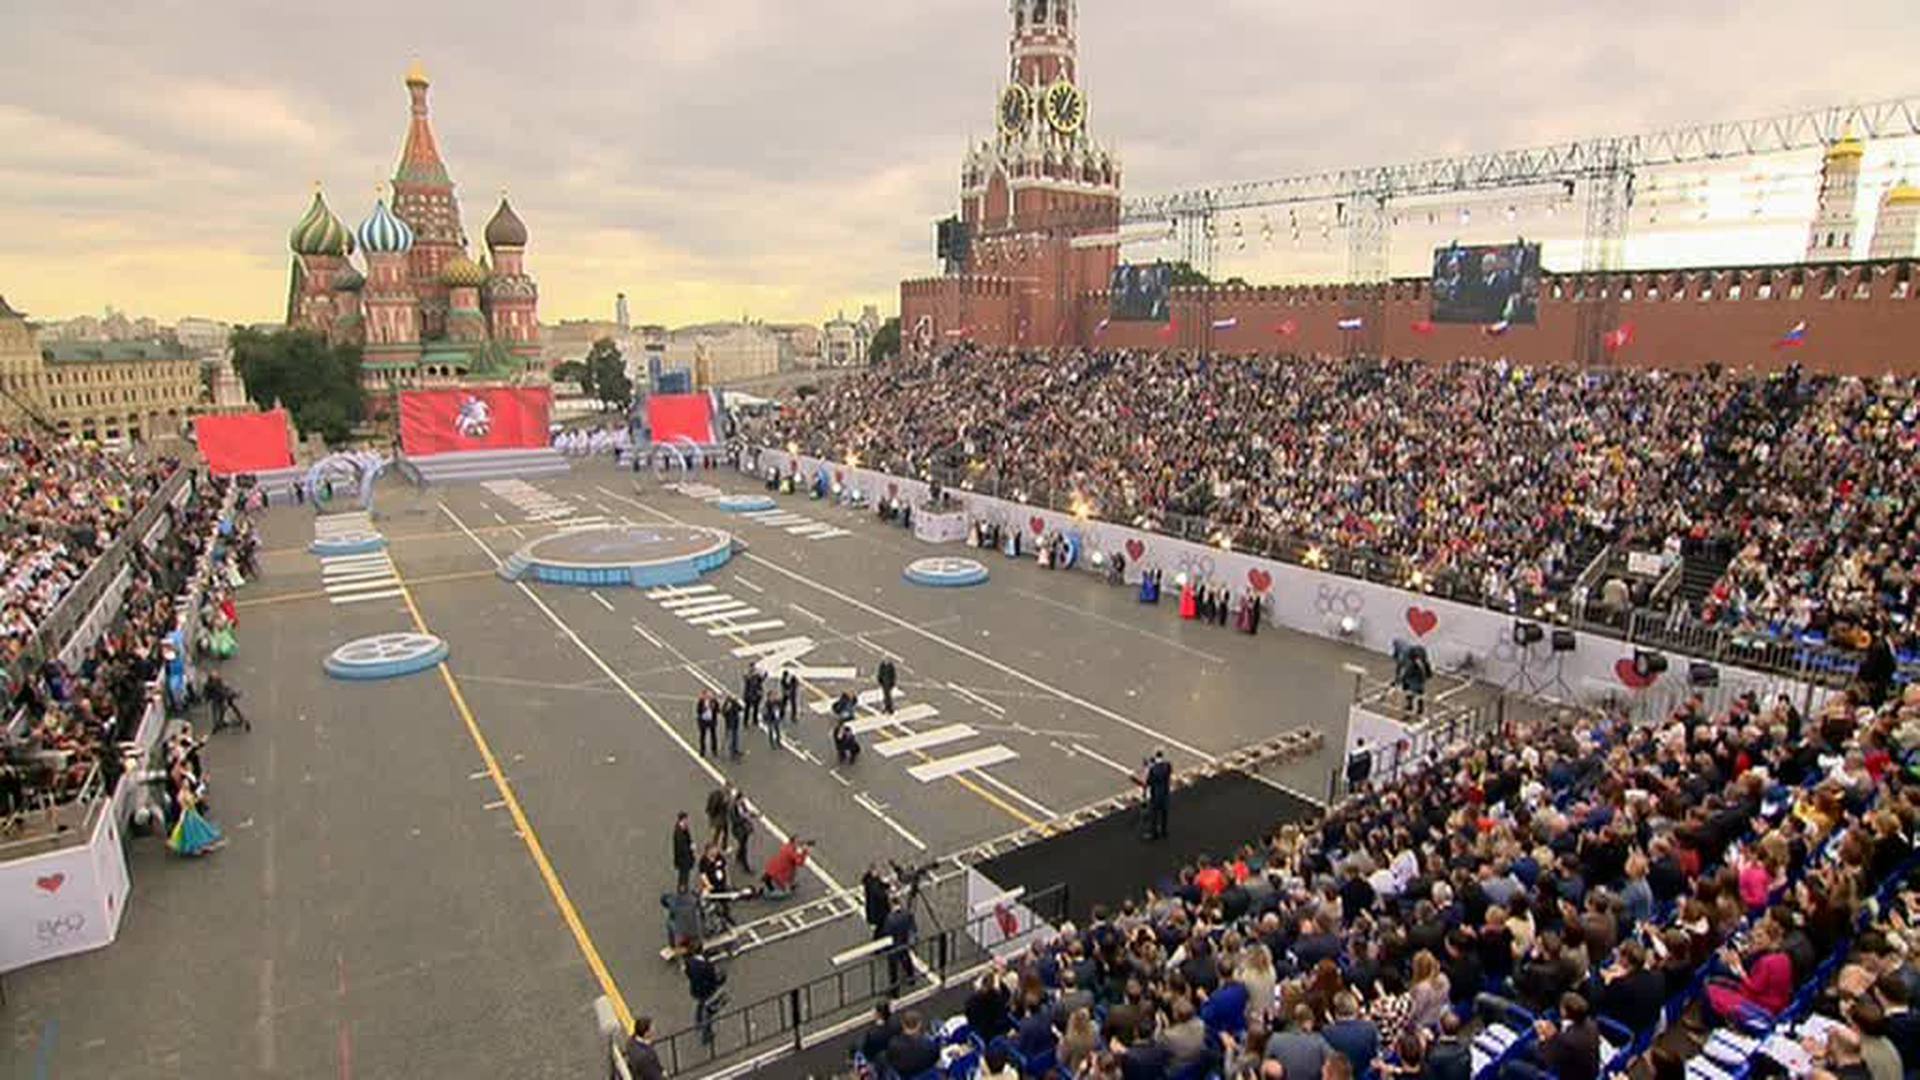 Сцена на красной площади. Трибуны на красной площади. Концерт на красной площади. Концерты на красной площади в Москве.